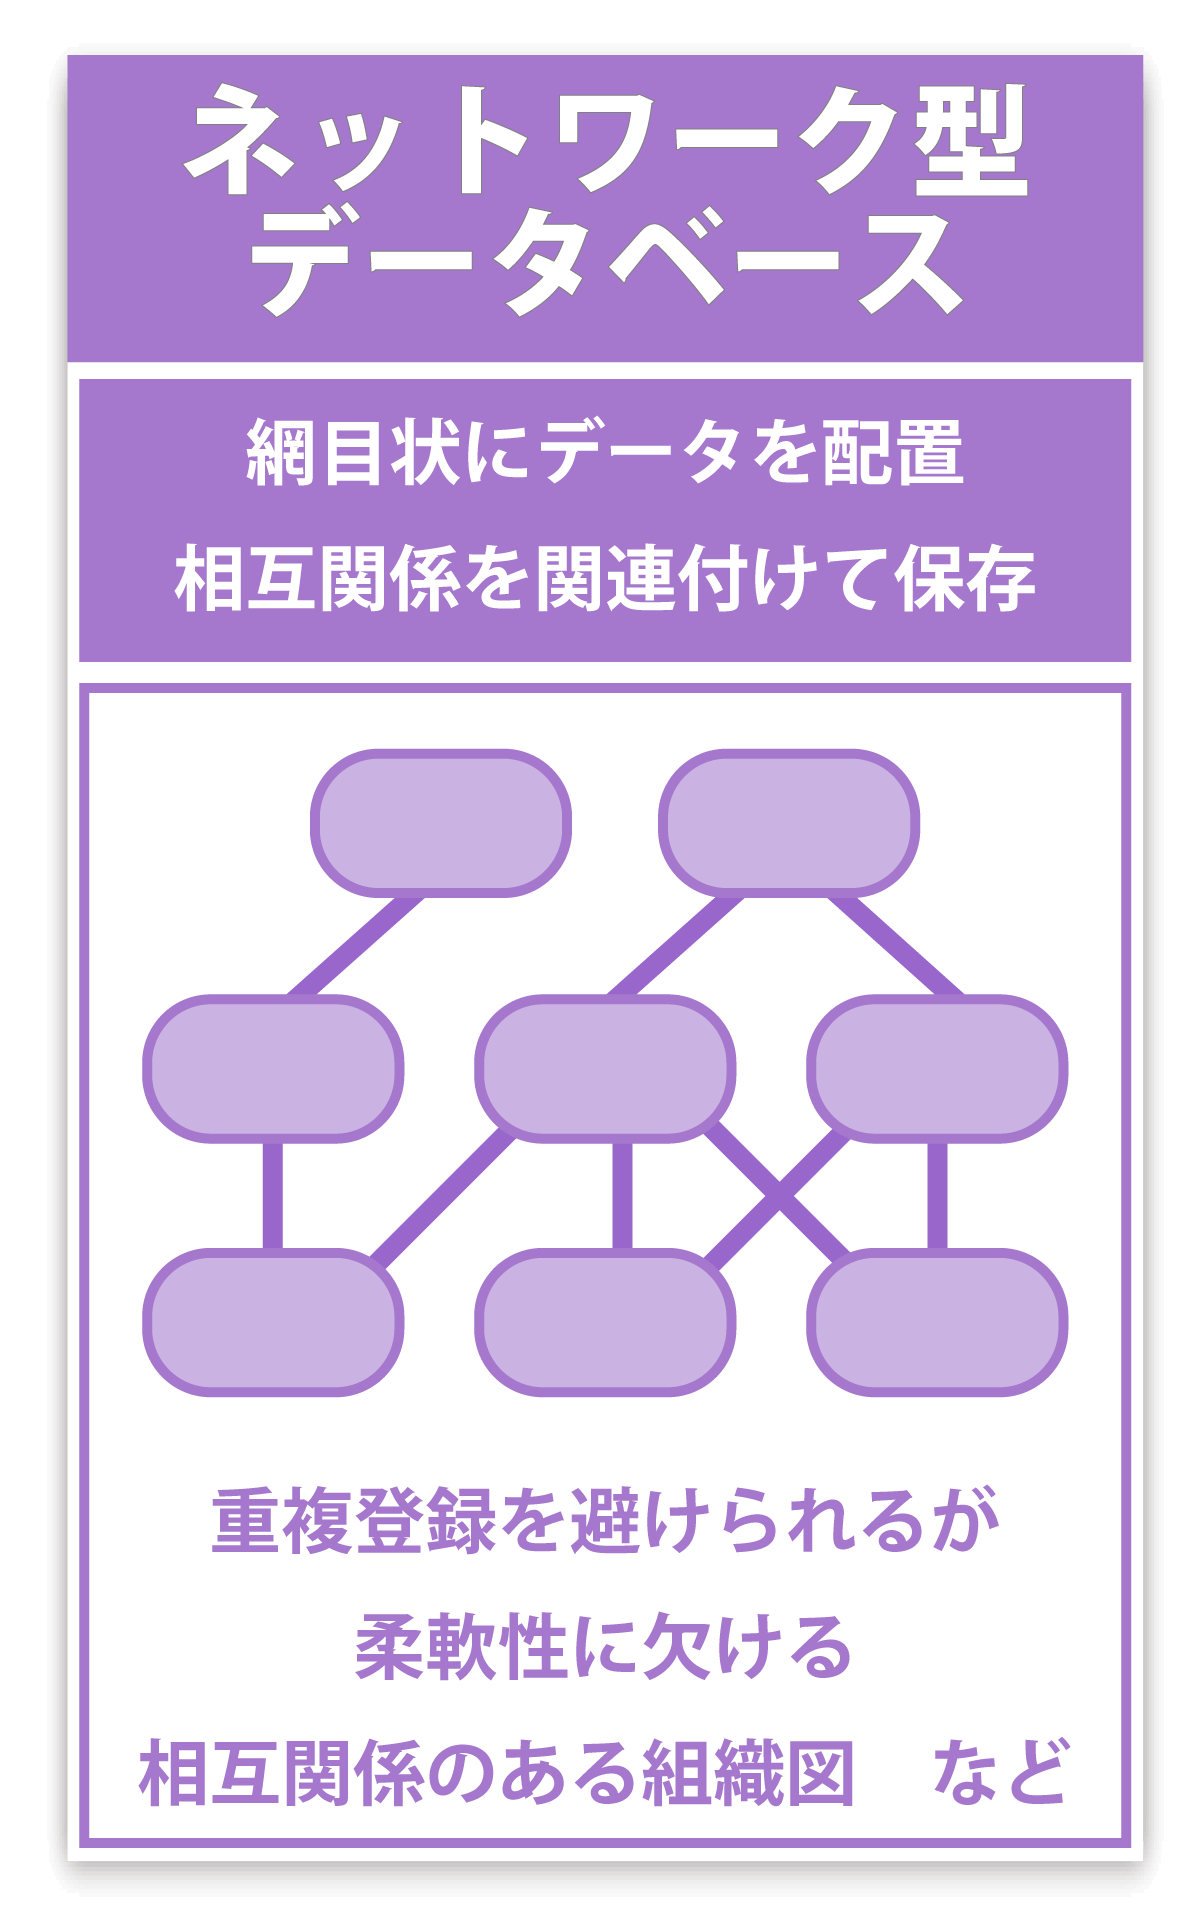 ネットワーク型データベースのイメージ図